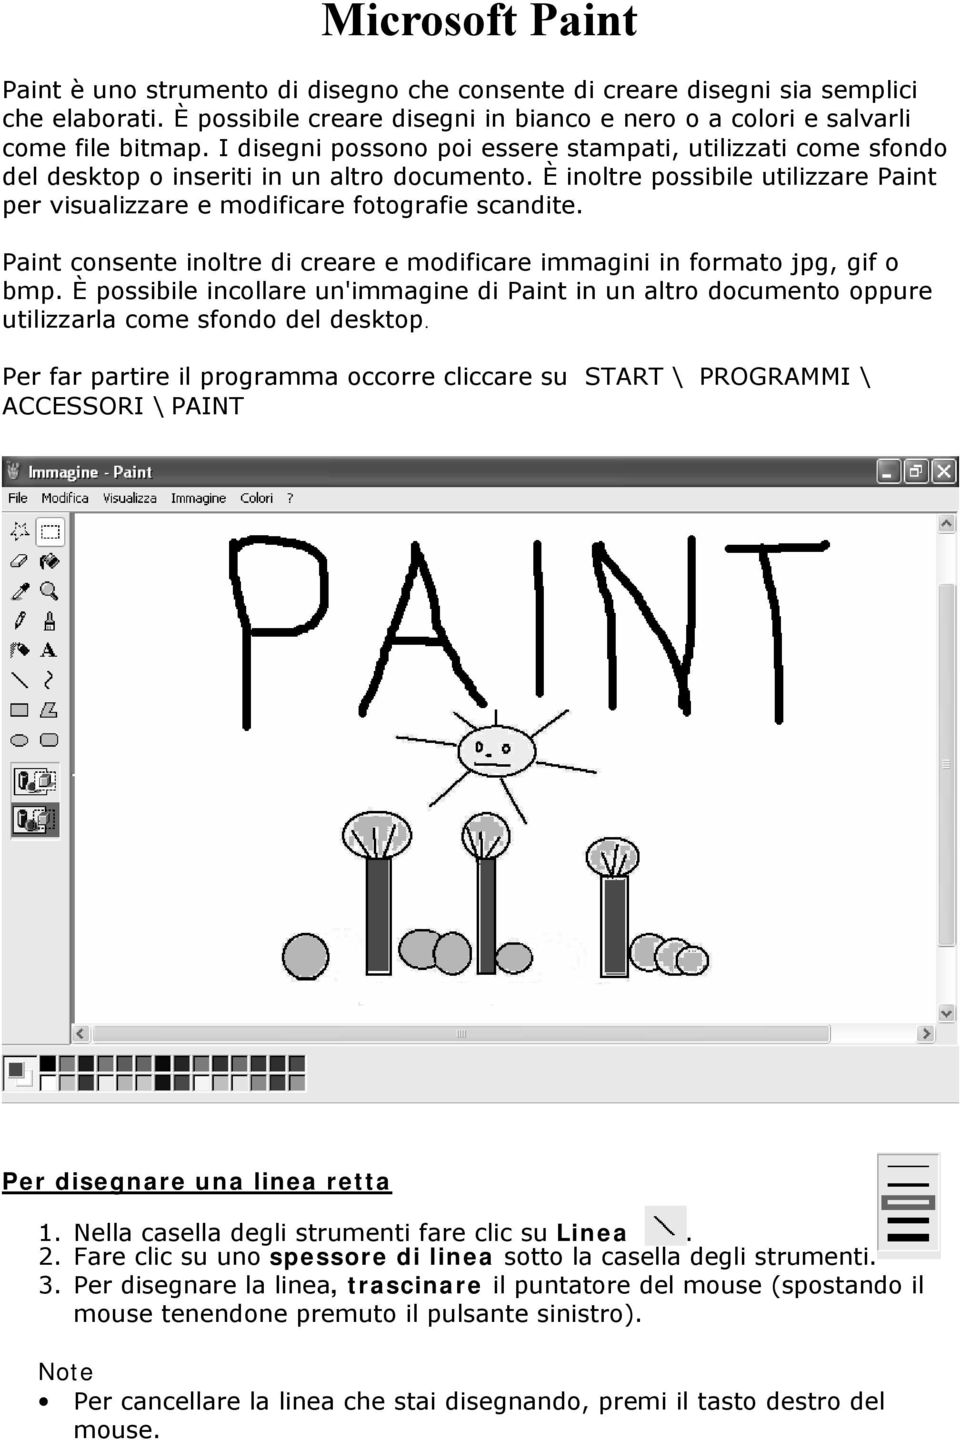 Paint consente inoltre di creare e modificare immagini in formato jpg, gif o bmp. È possibile incollare un'immagine di Paint in un altro documento oppure utilizzarla come sfondo del desktop.